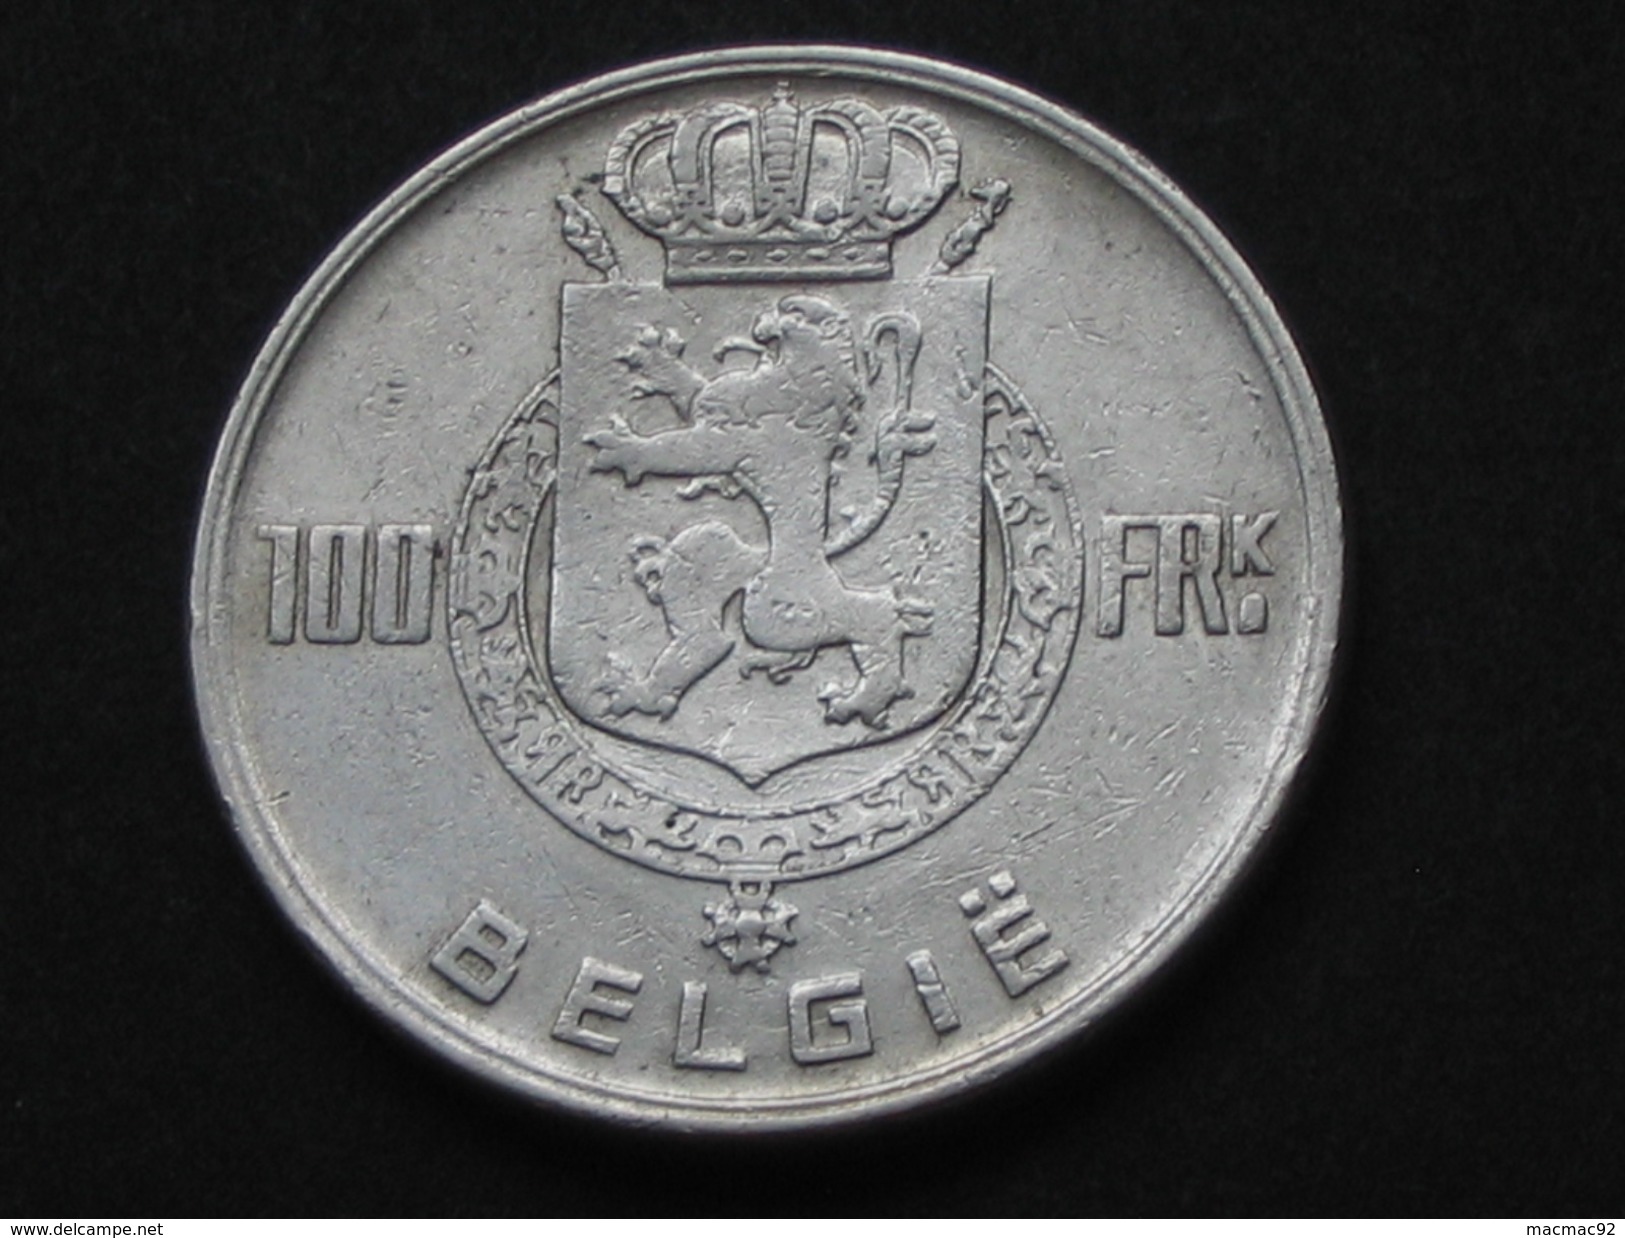 100 Francs 1951 - Argent -  BELGIQUE-BELGIE  **** EN ACHAT IMMEDIAT **** - 100 Francs